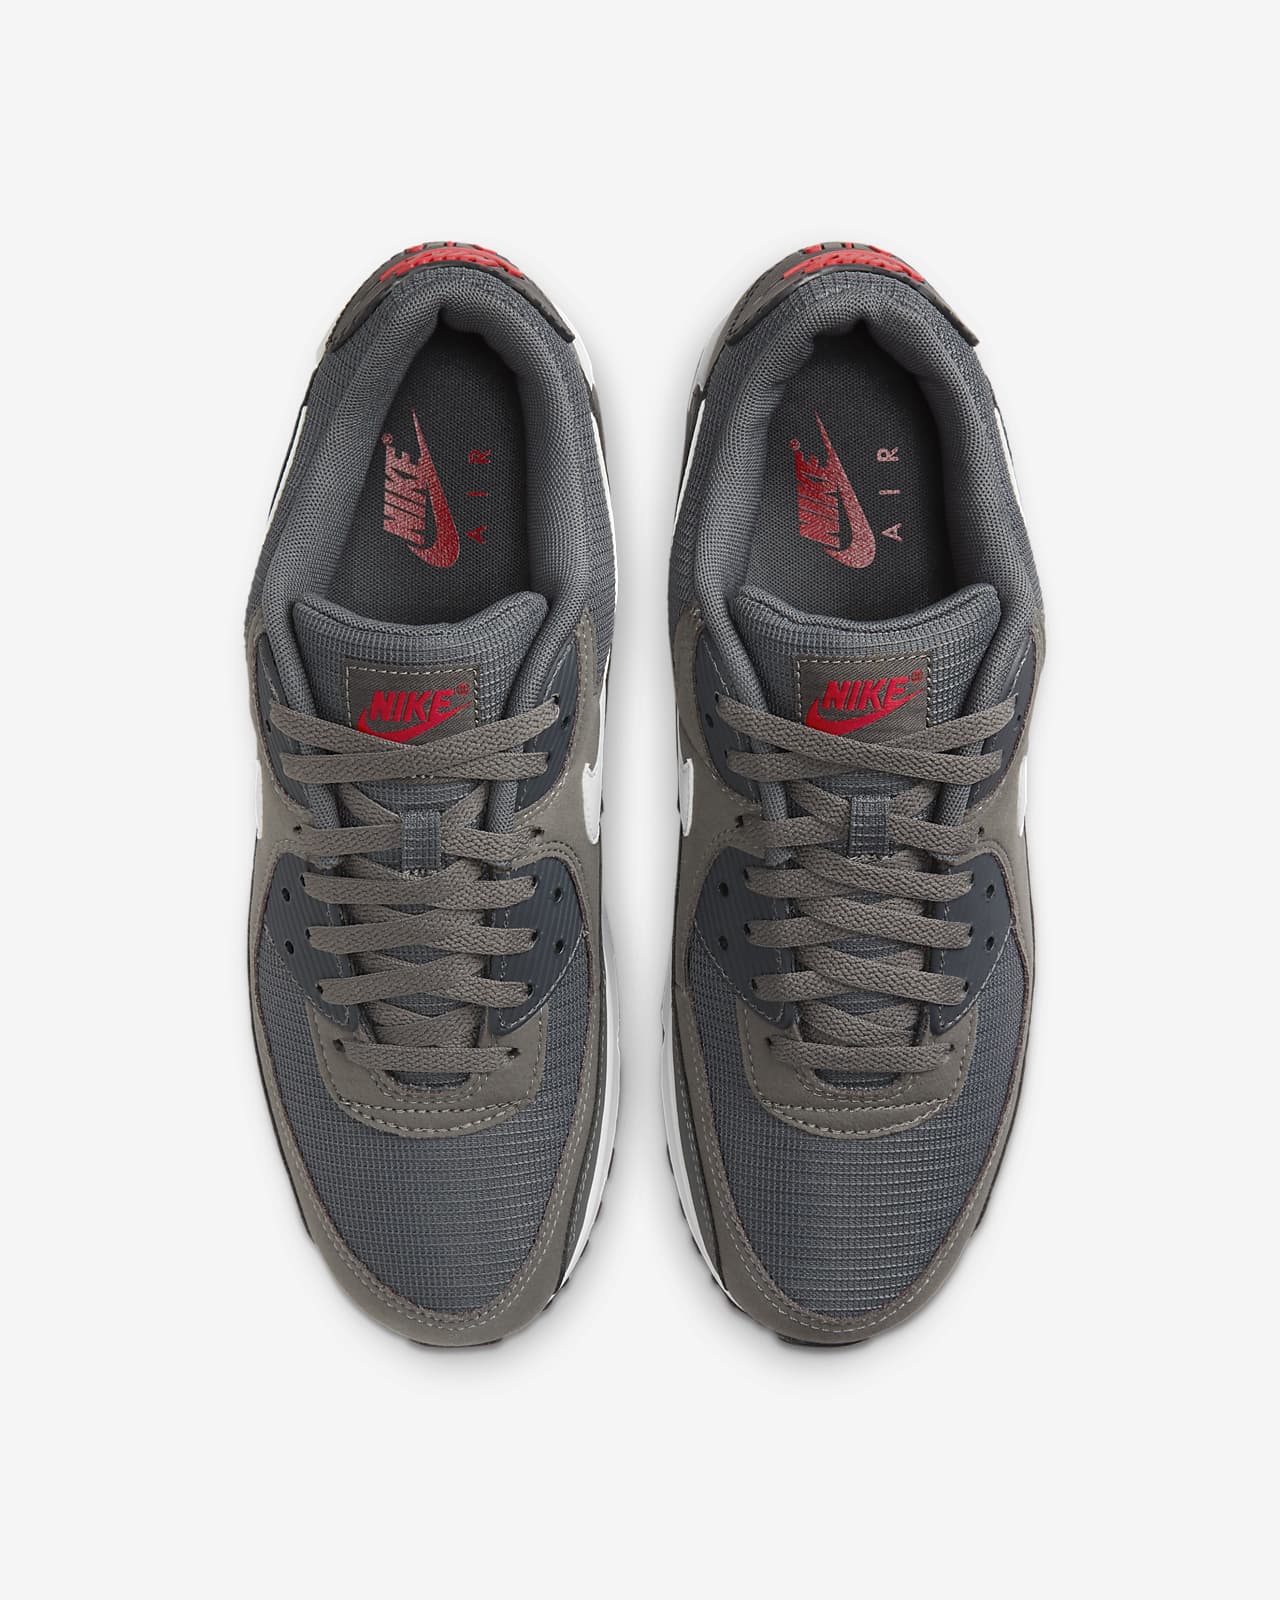 Las mejores ofertas en Nike Air Max 90 Zapatillas De Hombre